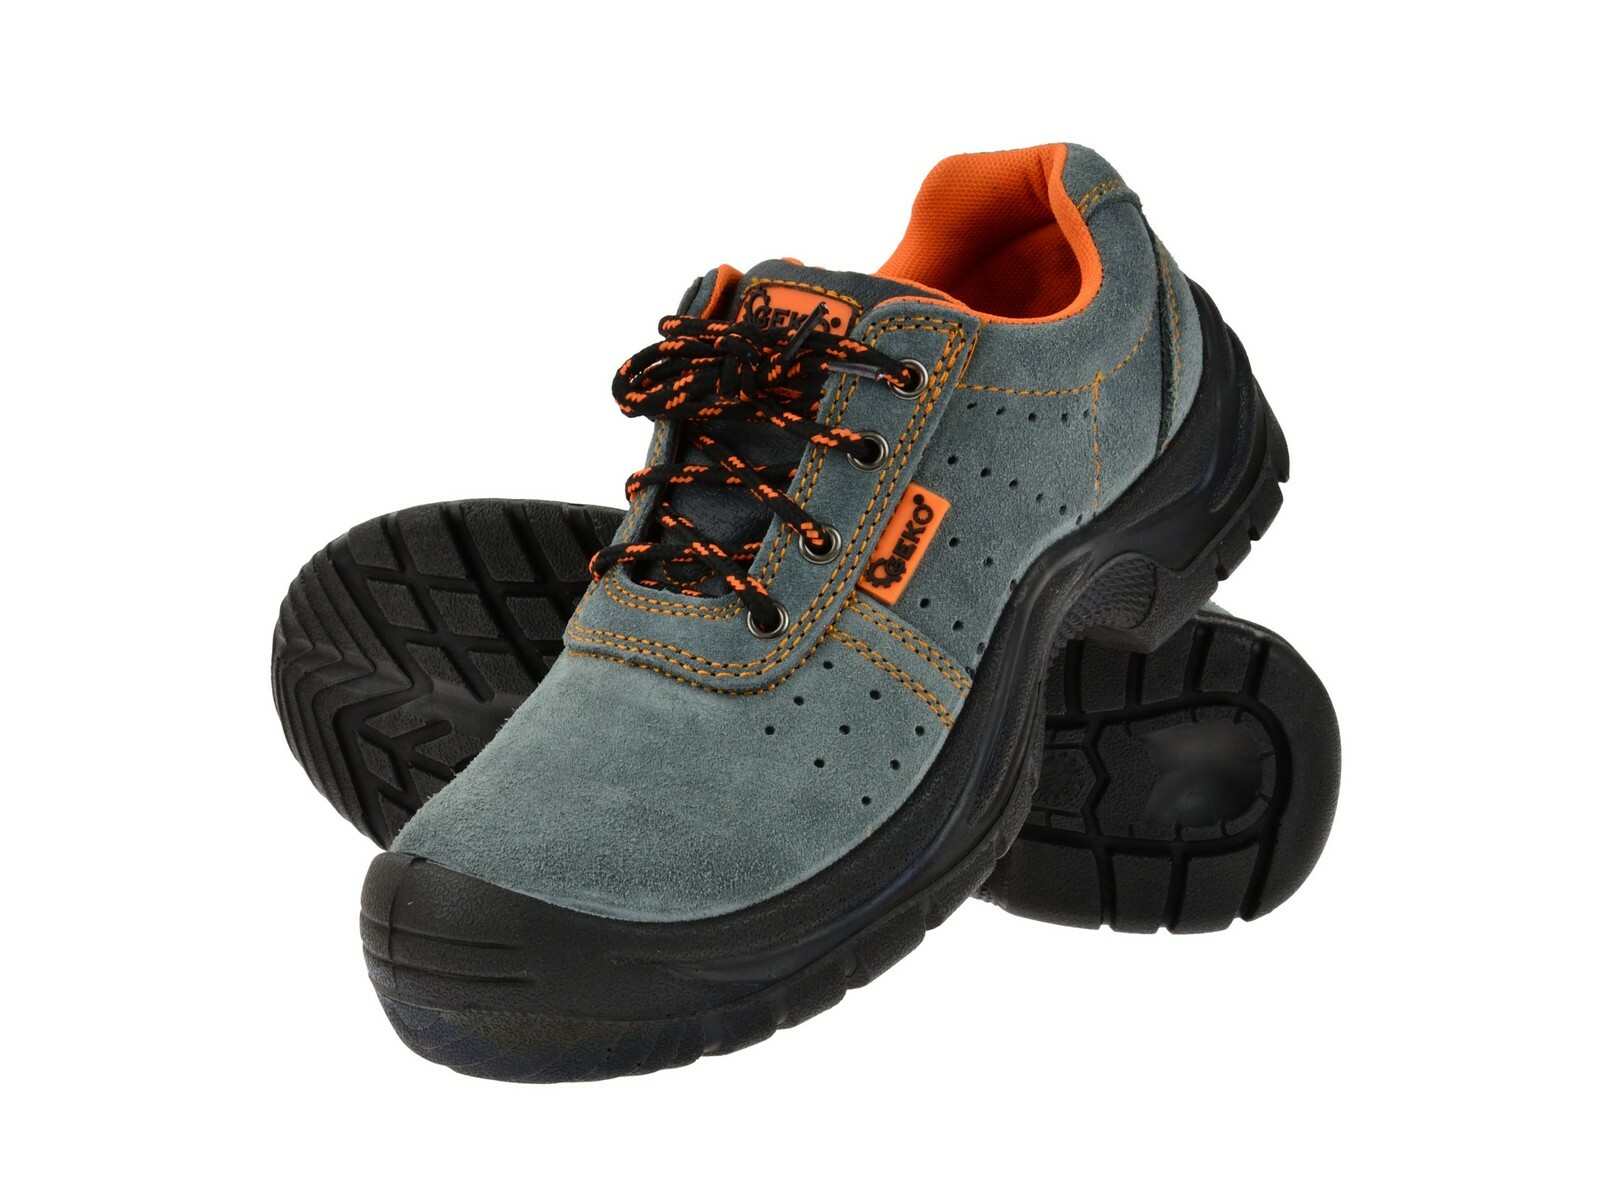 Ochranné pracovní boty semišové model č.3 vel.46 GEKO nářadí G90526 + Dárek, servis bez starostí v hodnotě 300Kč